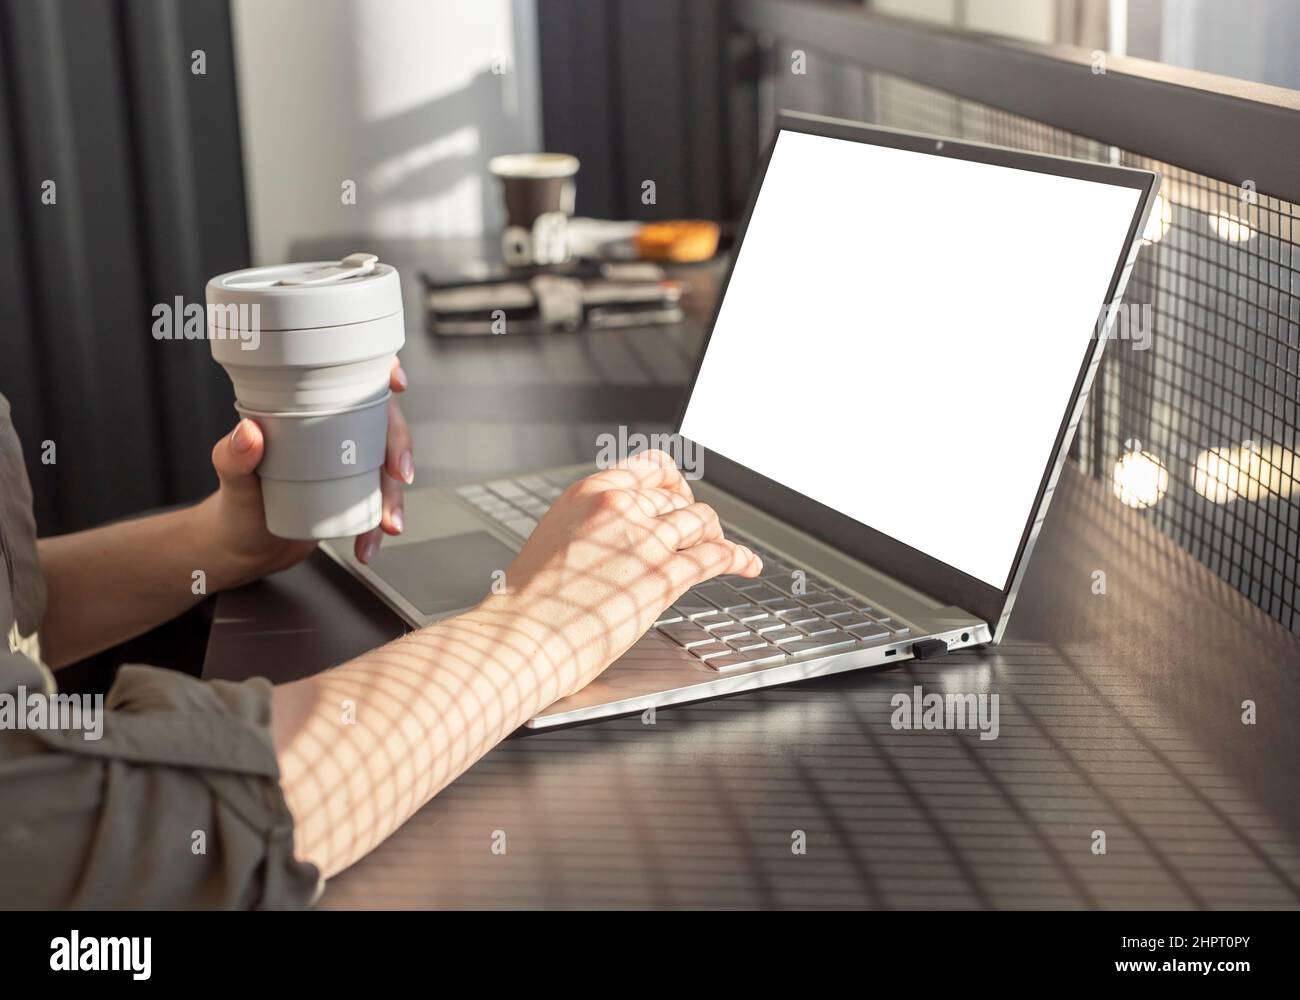 Les femmes tiennent la coupe ECO et travaillent sur un ordinateur portable. Femme d'affaires assise dans un café et utilisant la maquette d'ordinateur pour le travail, l'étude, la communication sociale. Photo de haute qualité Banque D'Images